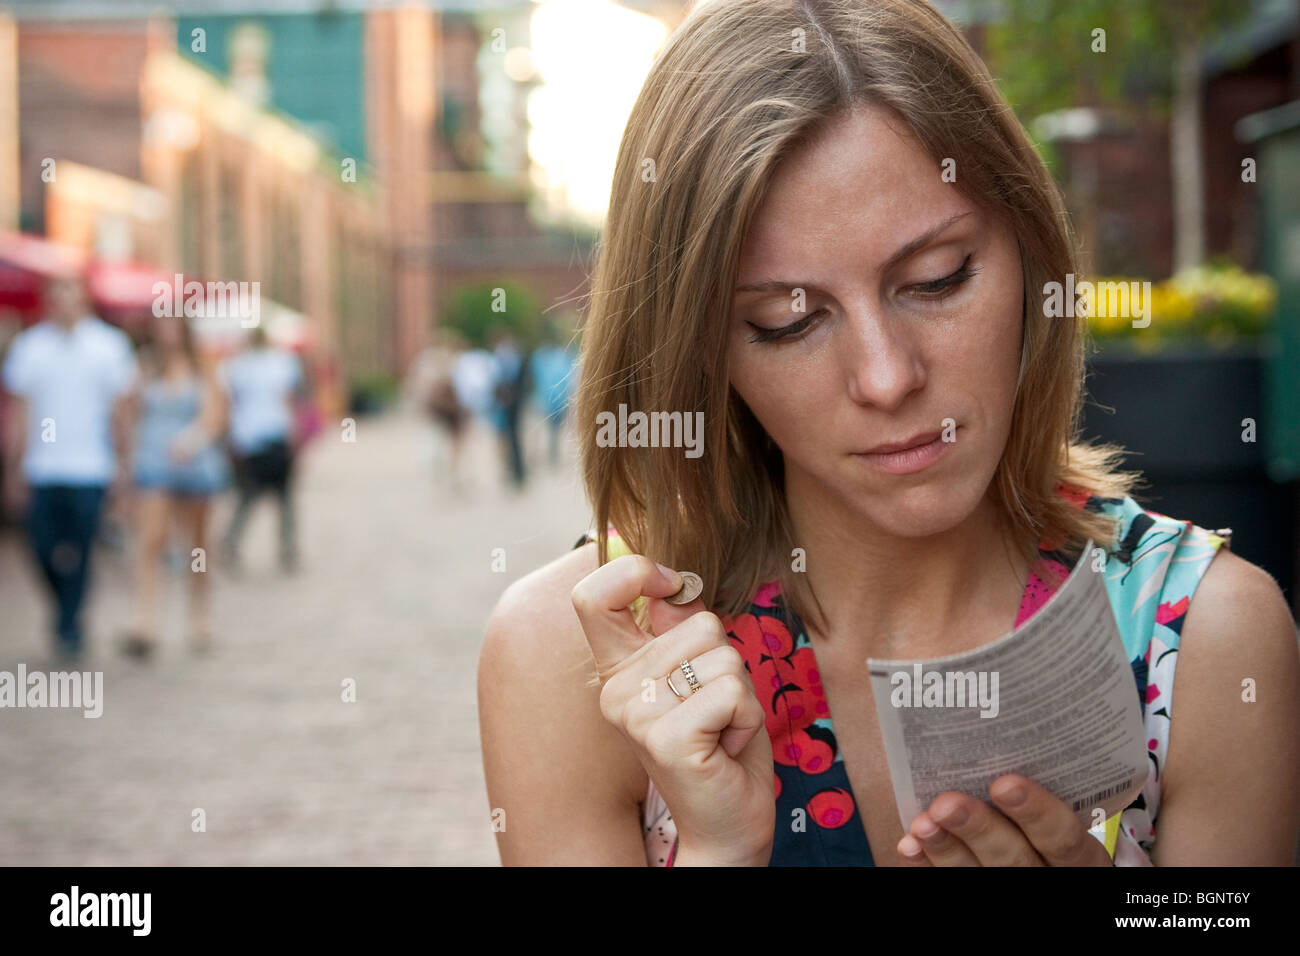 Jeune femme jouant une loterie à gratter, tenant une pièce de monnaie Banque D'Images